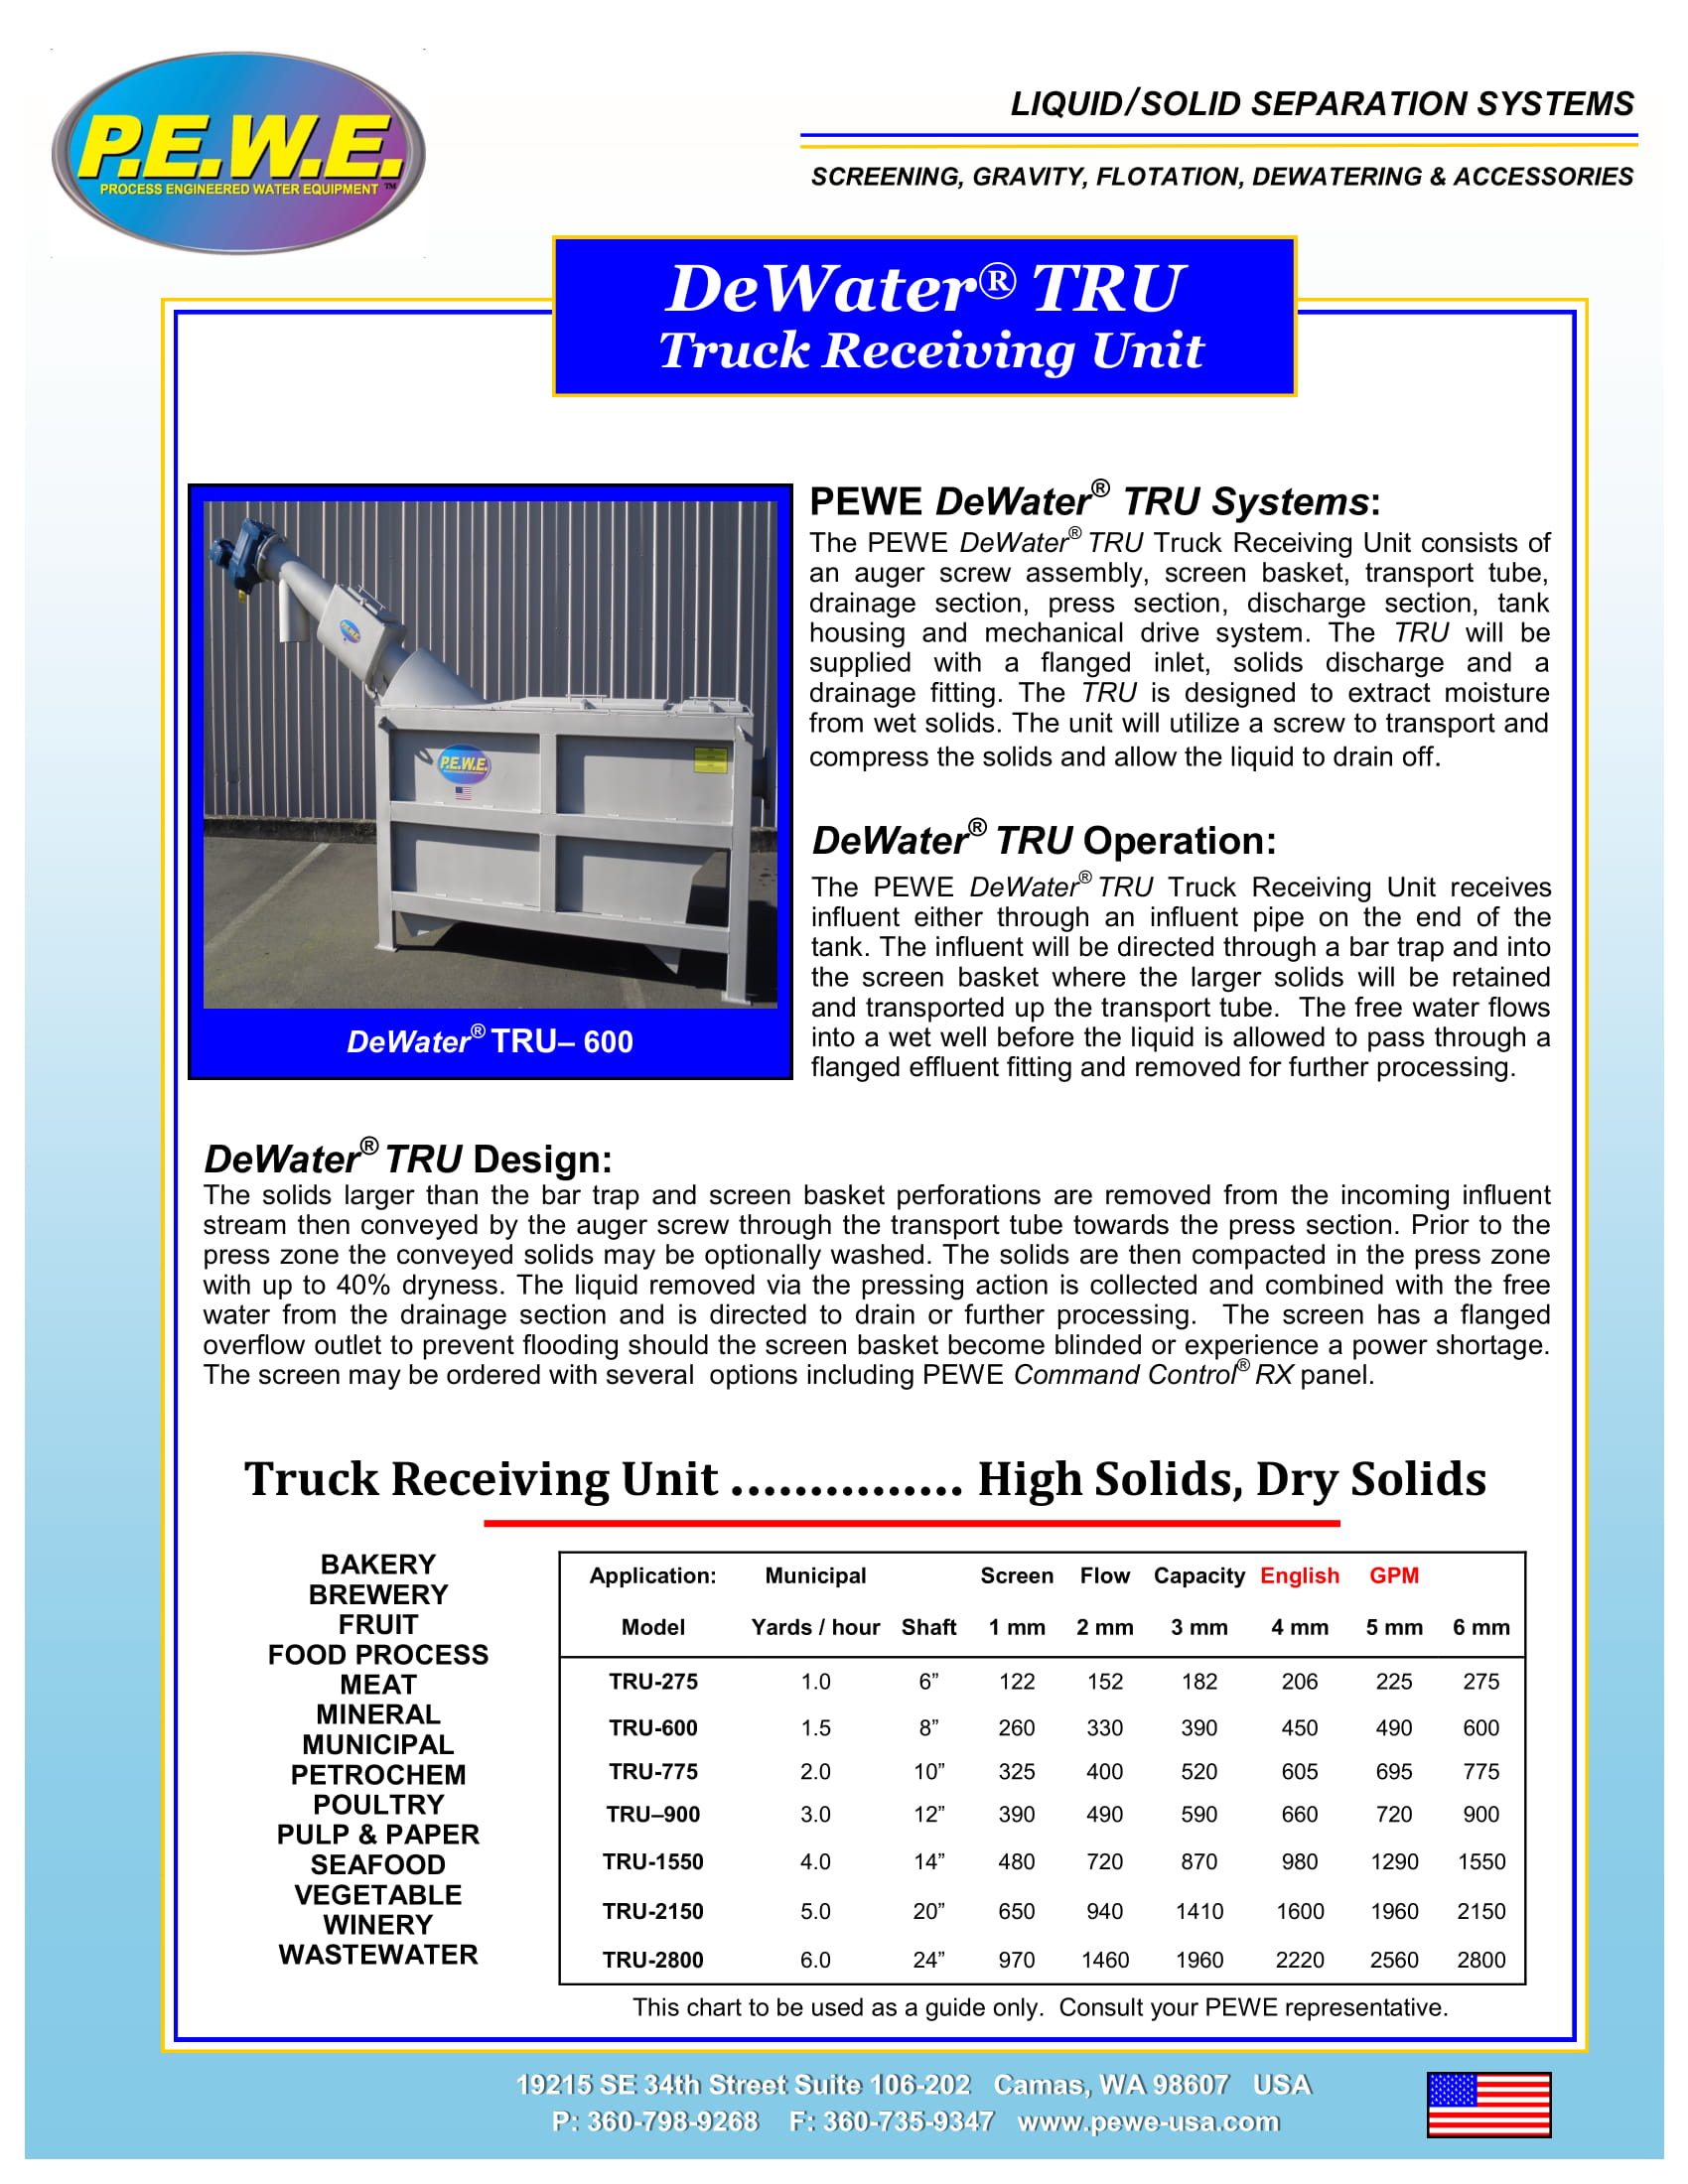 PEWE-DeWater-TRU-Brochure-051719-1.jpg